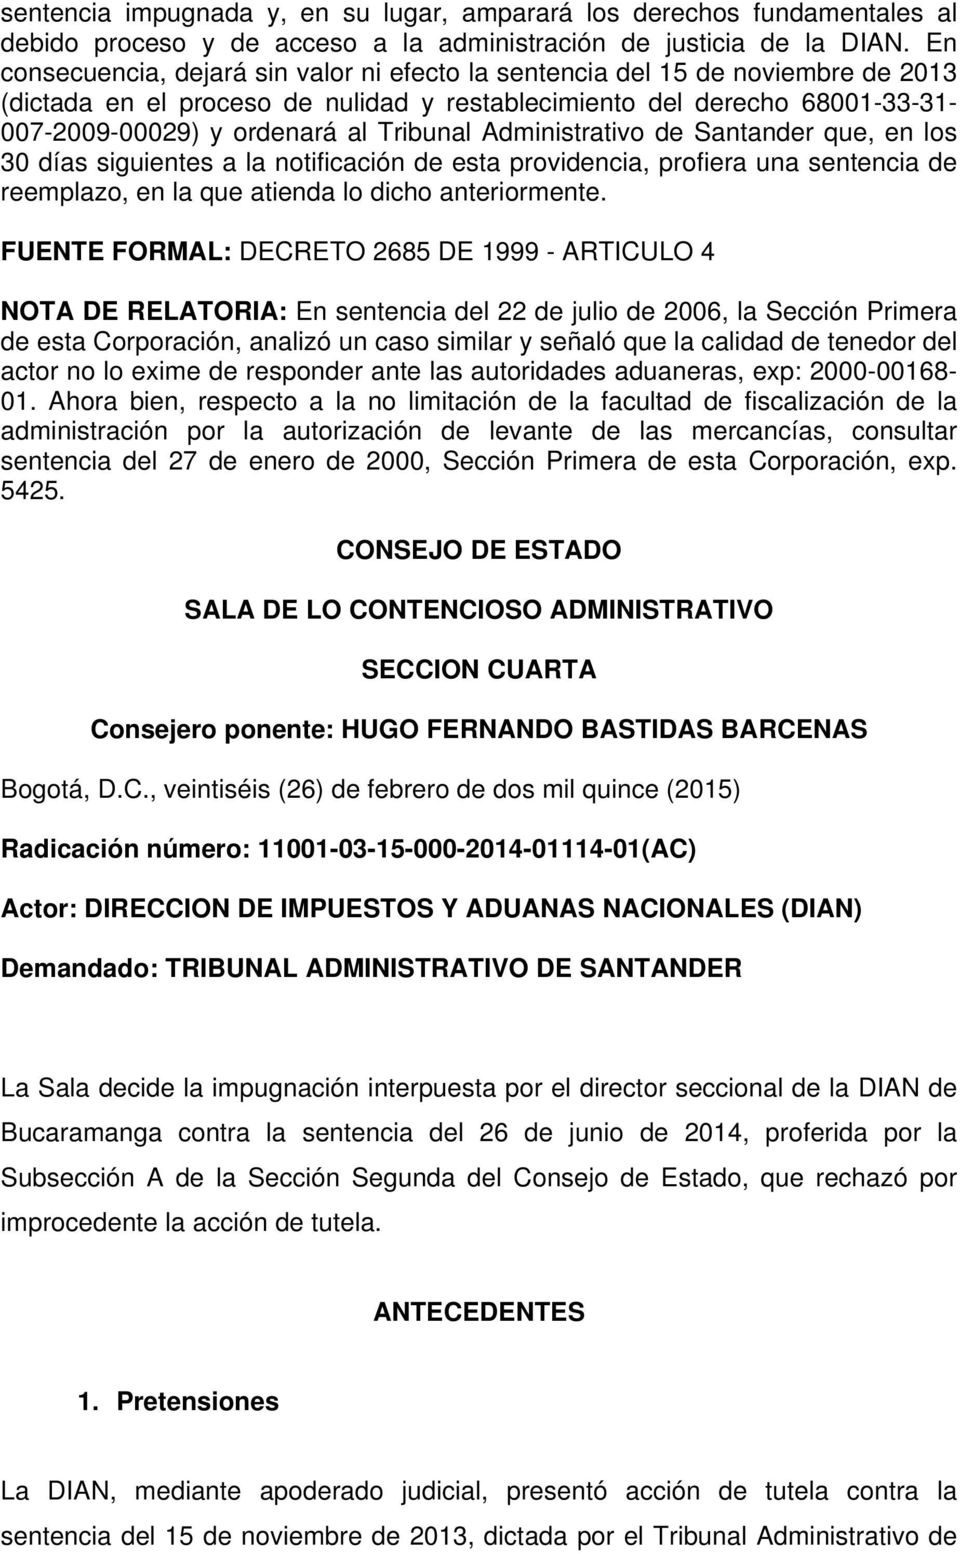 Tribunal Administrativo de Santander que, en los 30 días siguientes a la notificación de esta providencia, profiera una sentencia de reemplazo, en la que atienda lo dicho anteriormente.